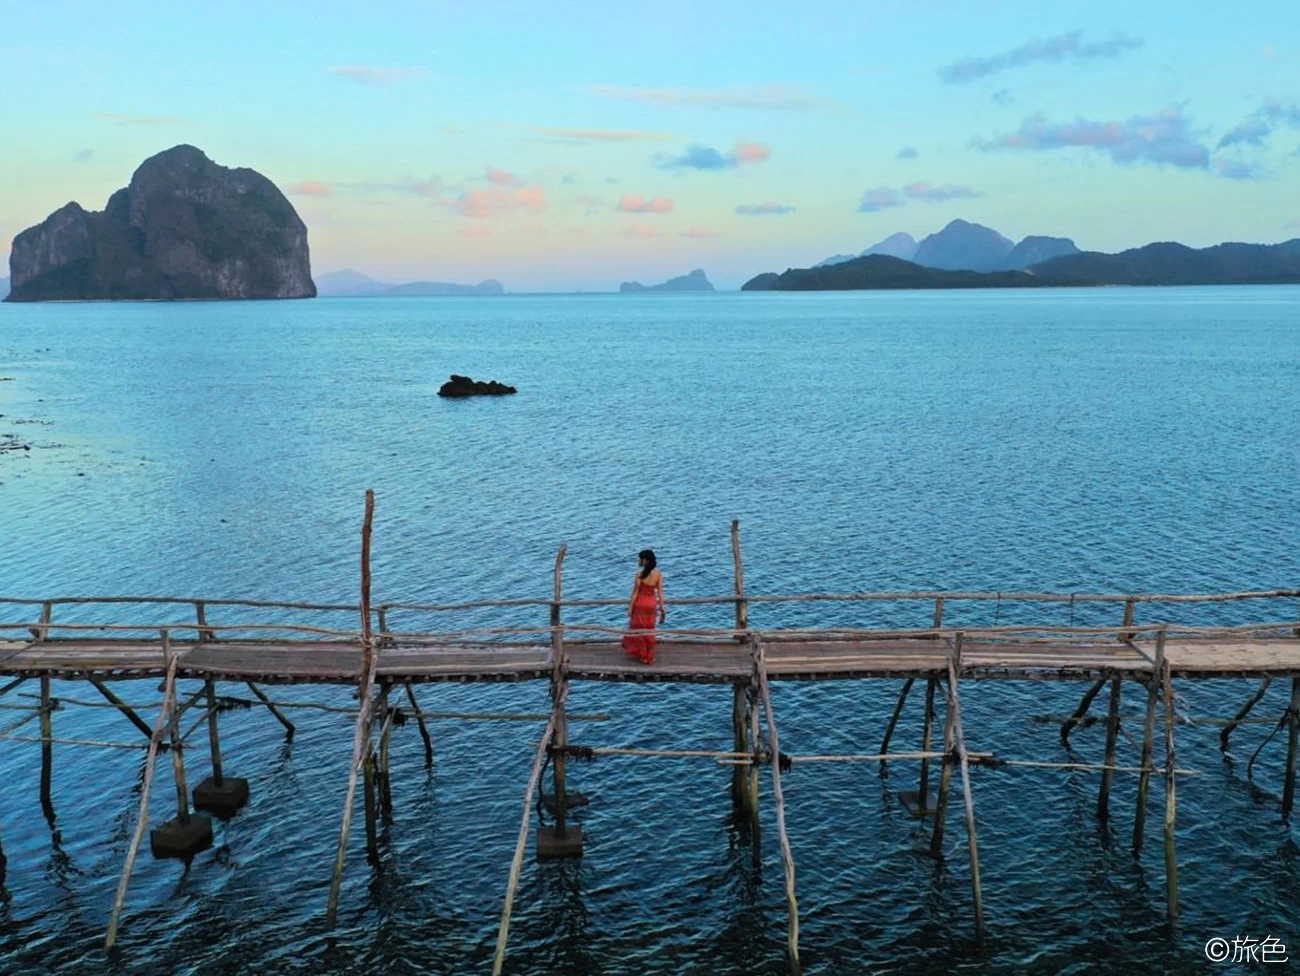 最後の秘境エルニドのマングローブに佇むお宿みっけ！ スーパー絵になる桟橋と島々の絶景